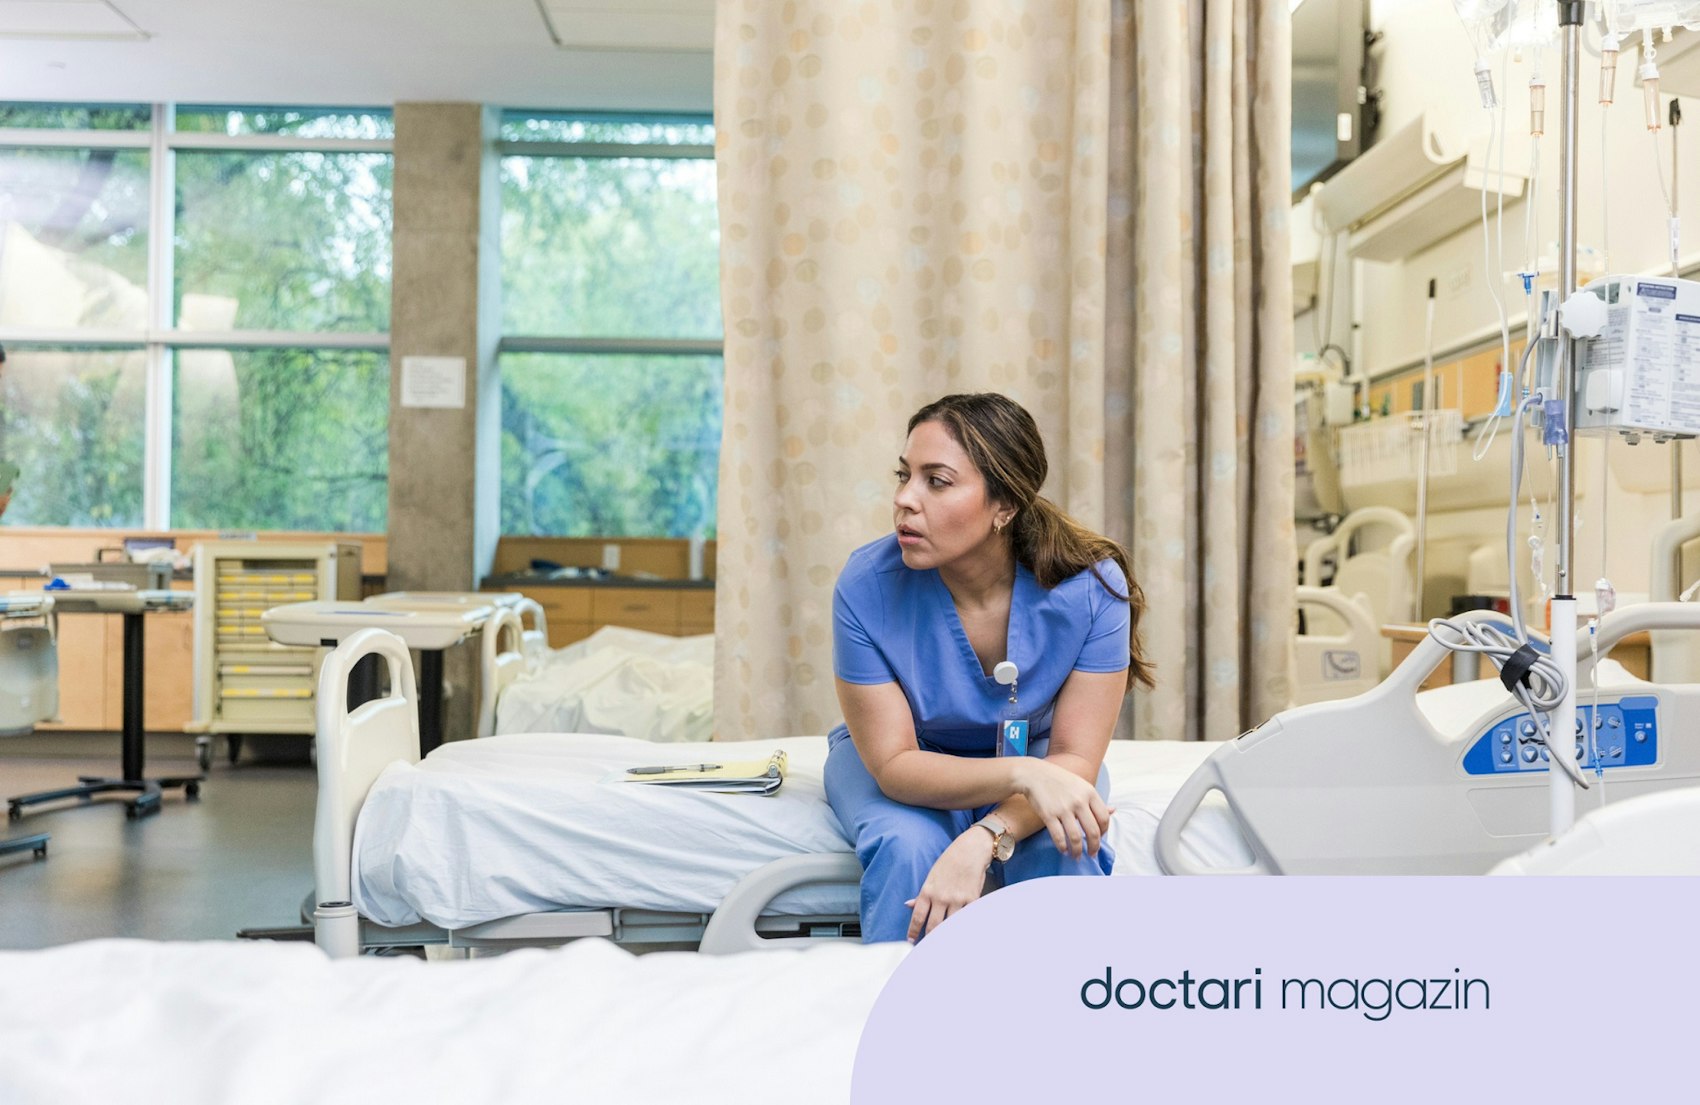 Erschöpft aussehende Krankenschwester sitzt alleine auf einem leeren Krankenhausbett.